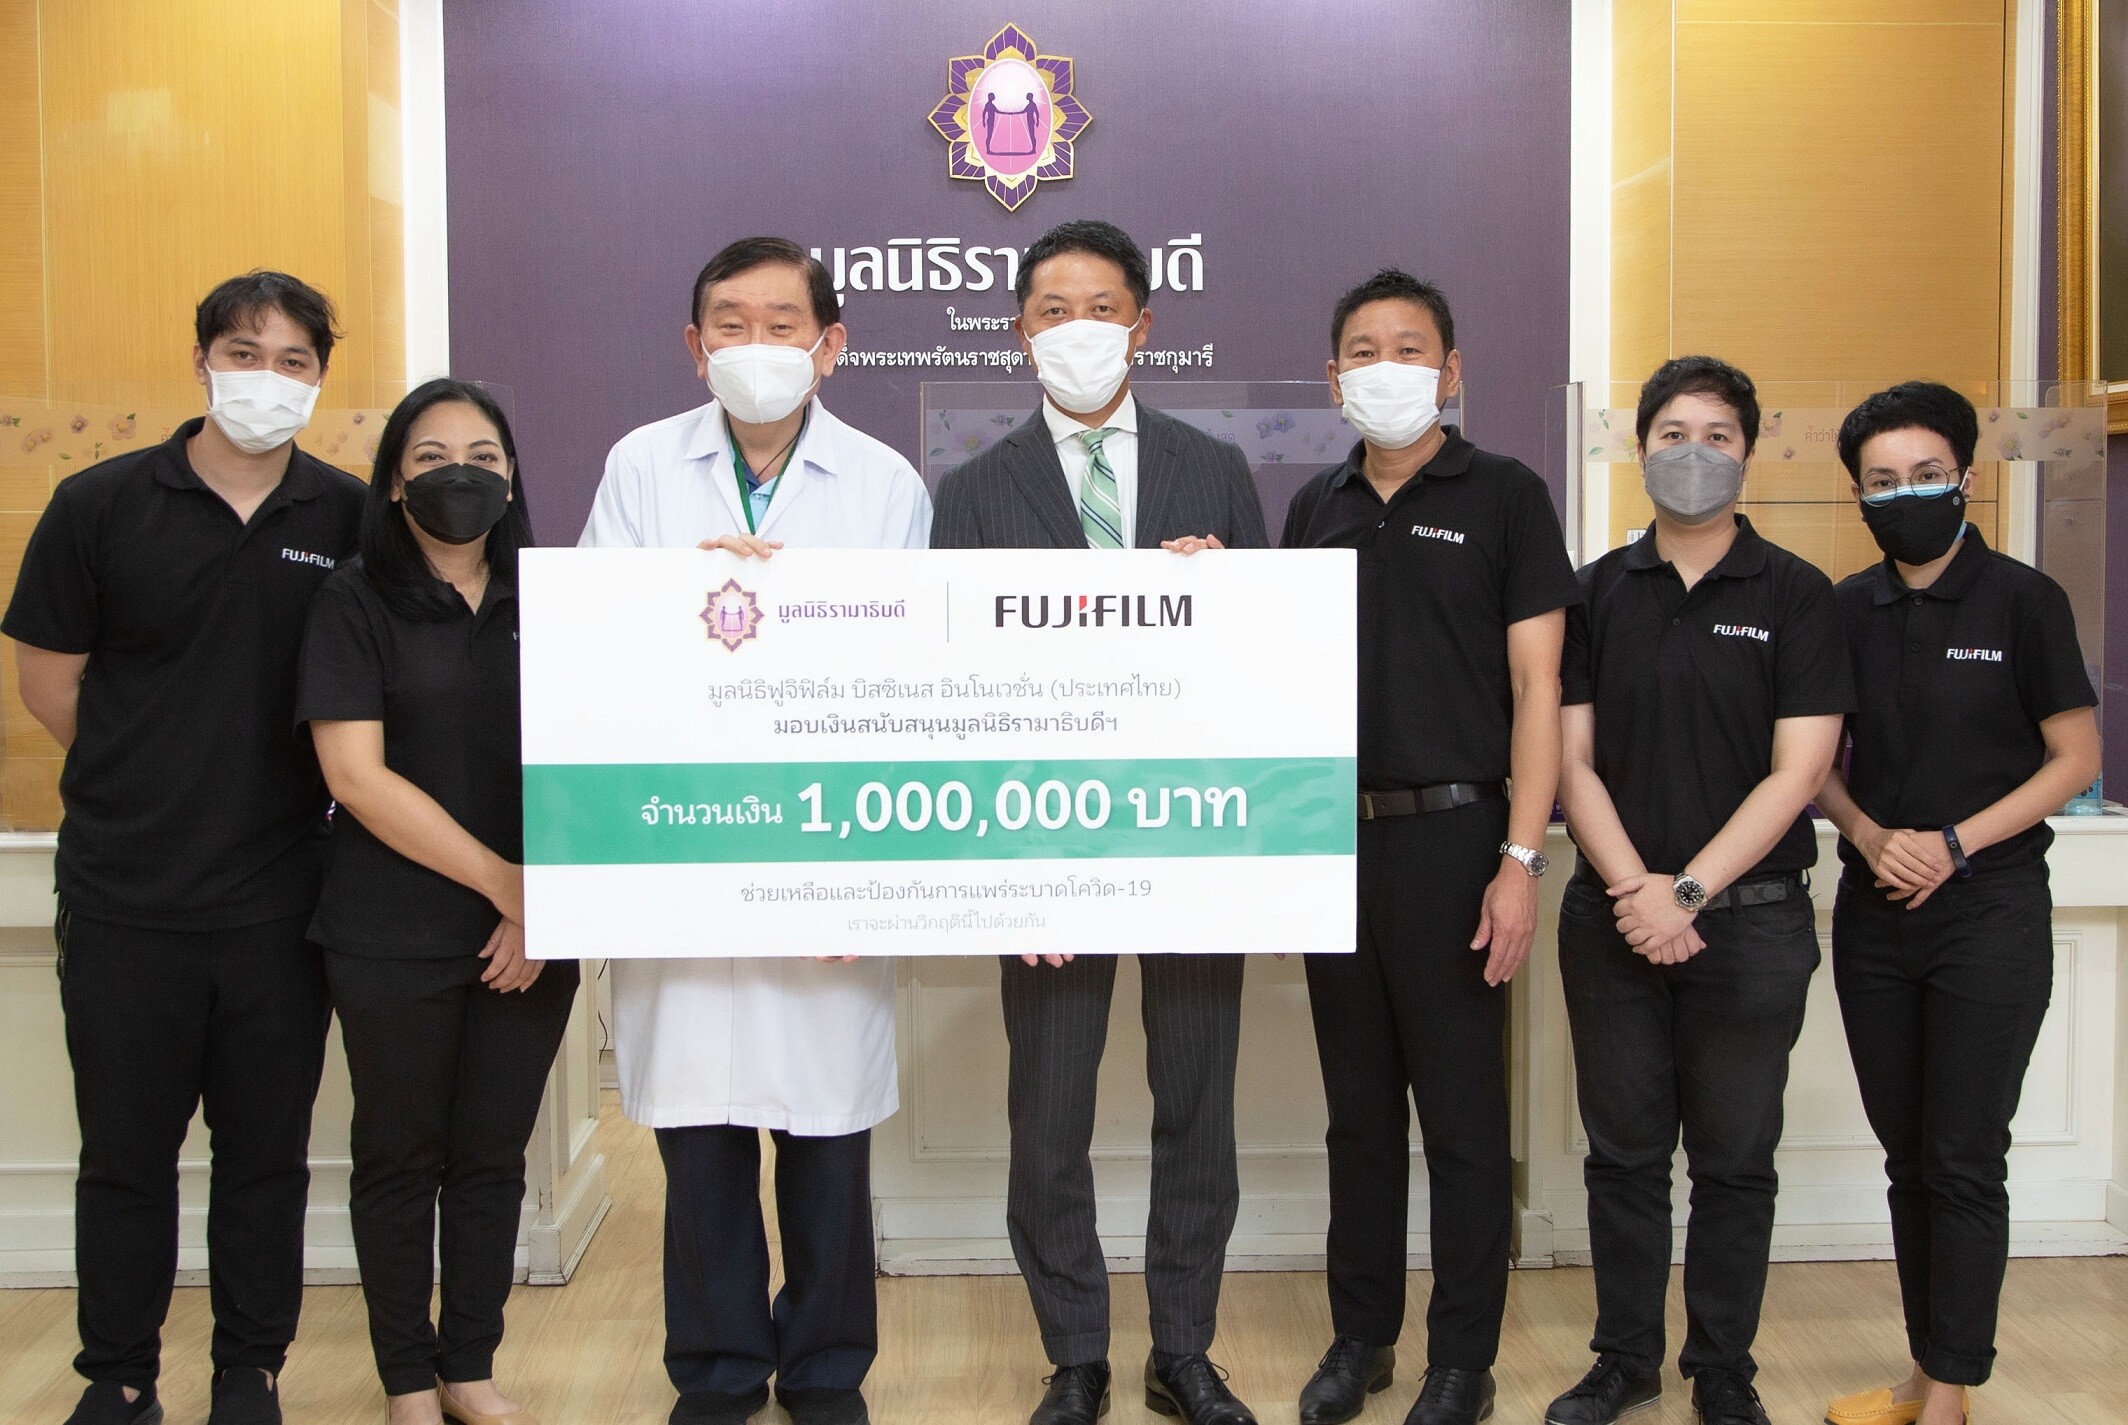 มูลนิธิฟูจิฟิล์ม บิสซิเนส อินโนเวชั่น (ประเทศไทย) ส่งกำลังใจ สู้ภัยโควิด บริจาคเงินและอุปกรณ์การแพทย์ รวมมูลค่า 2.5 ล้านบาท